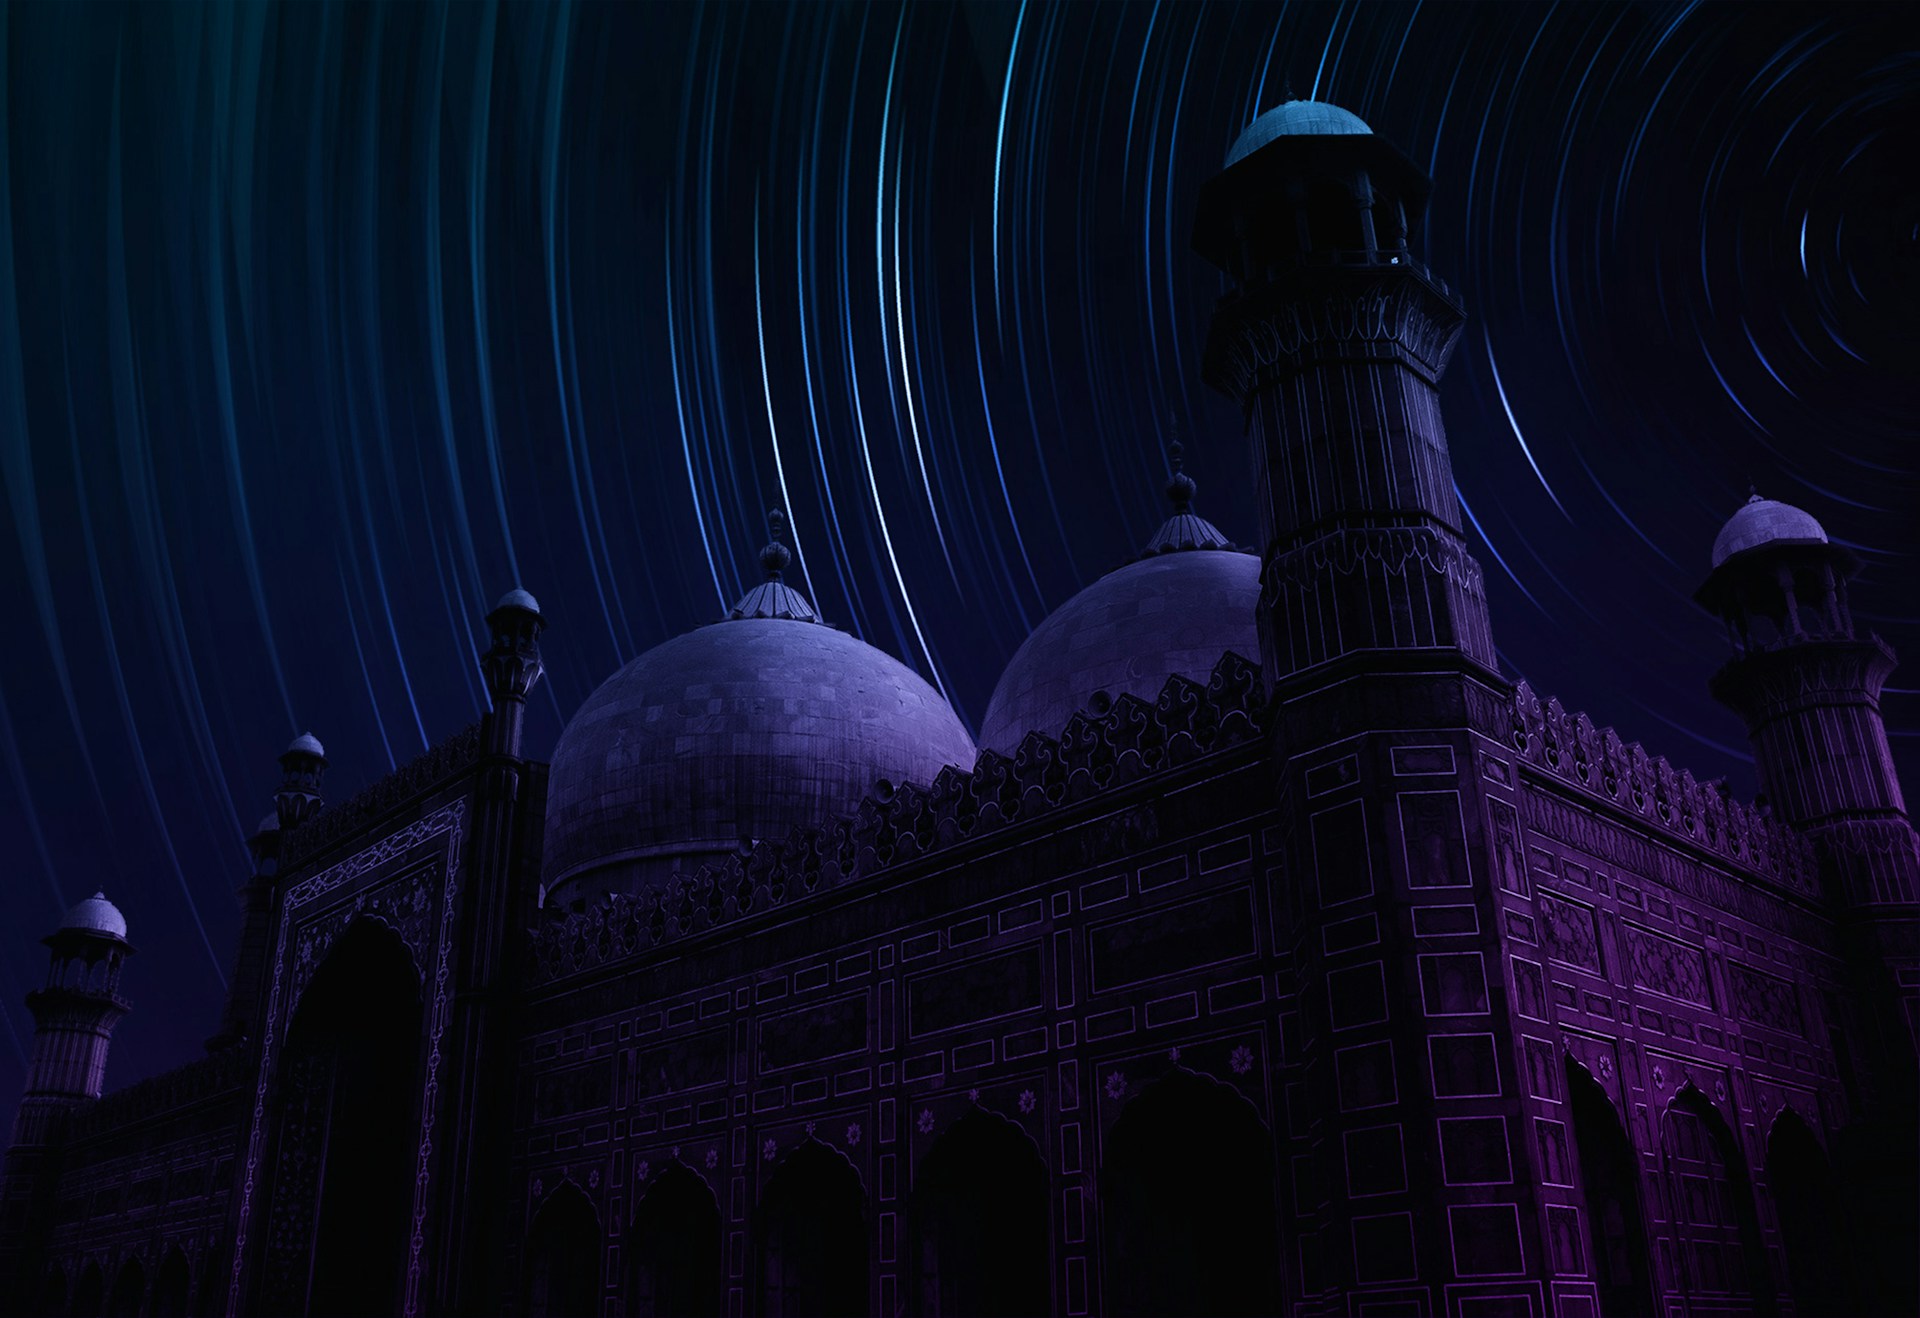 Menemukan Lailatul Qadr: Memperdalam Ibadah dan Memperbanyak Doa di Malam yang Penuh Berkah